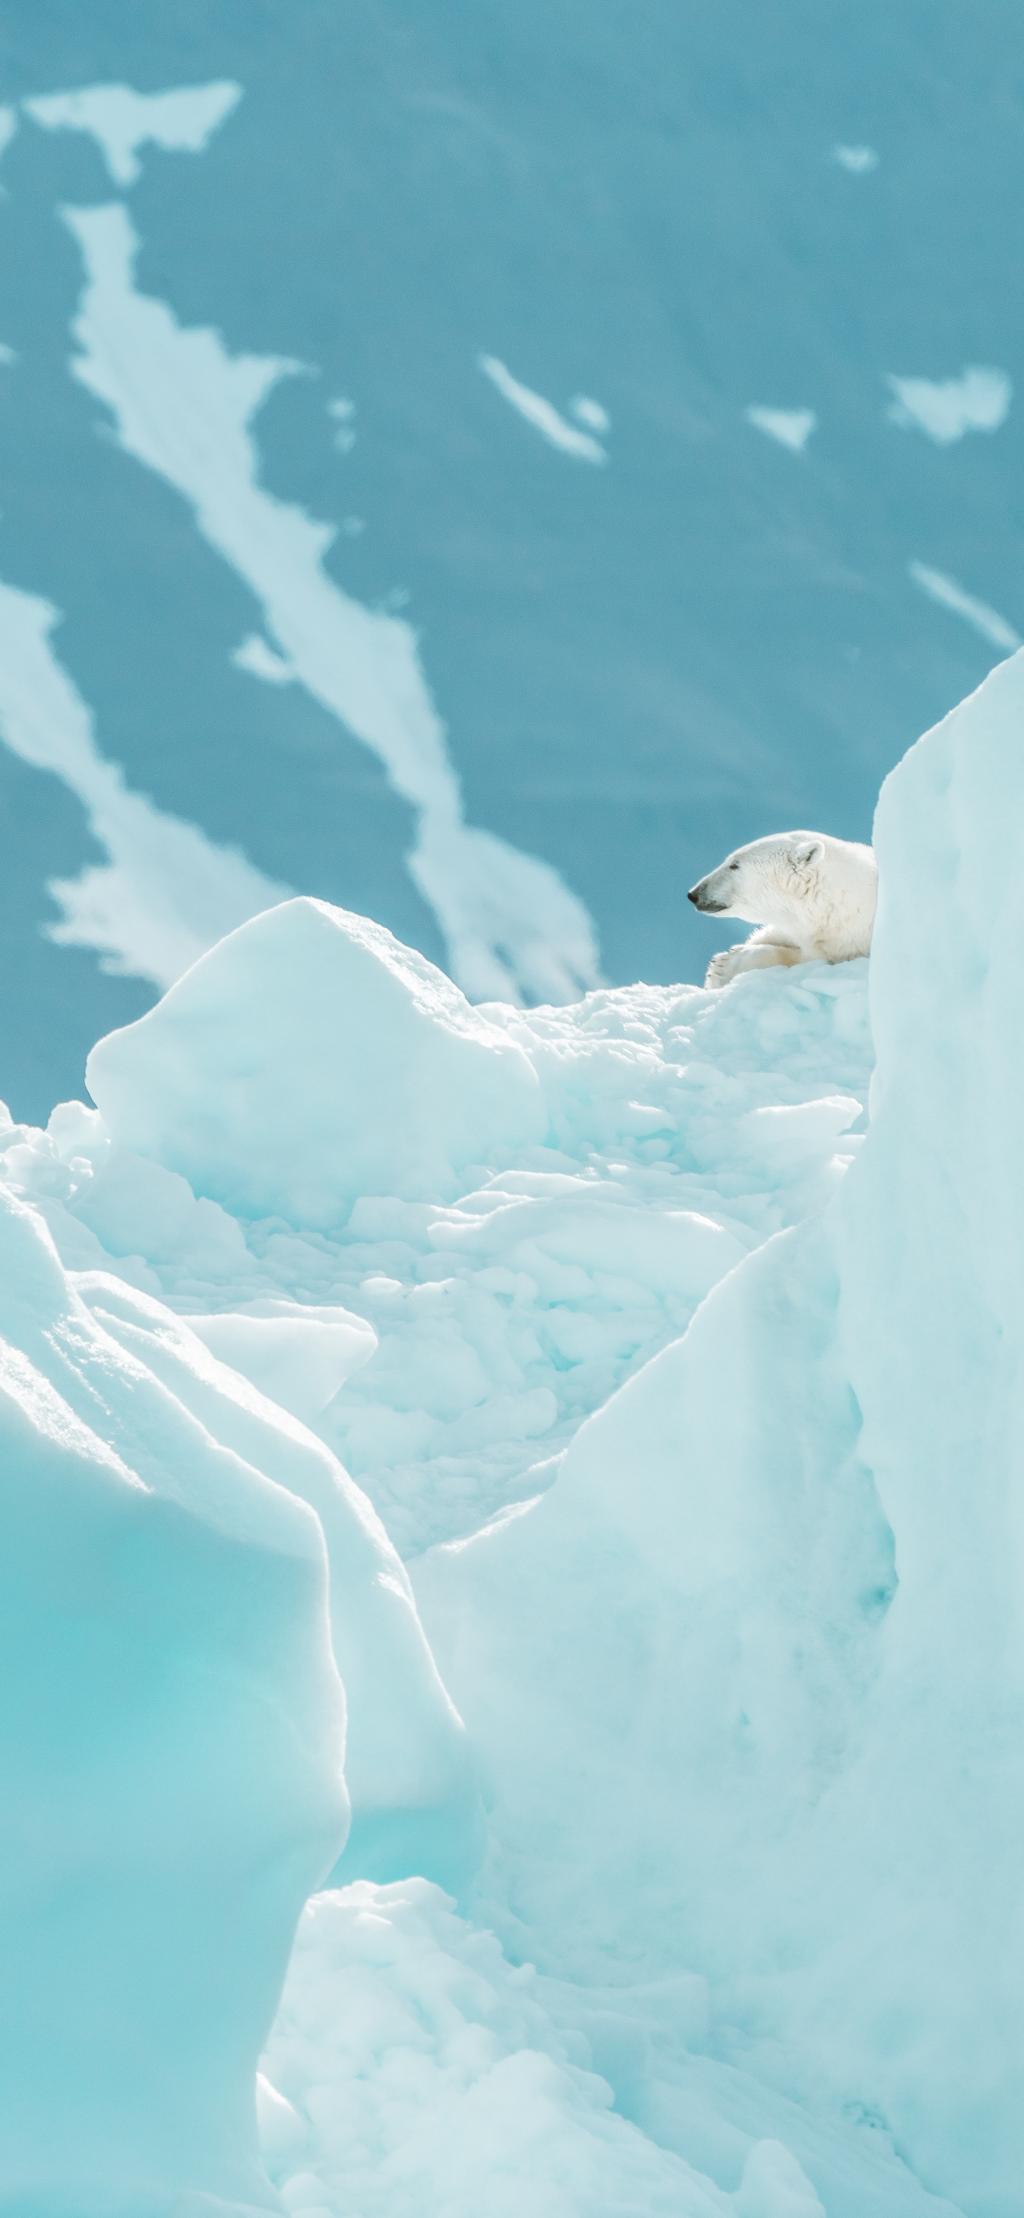 在冰天雪地里趴着的北极熊